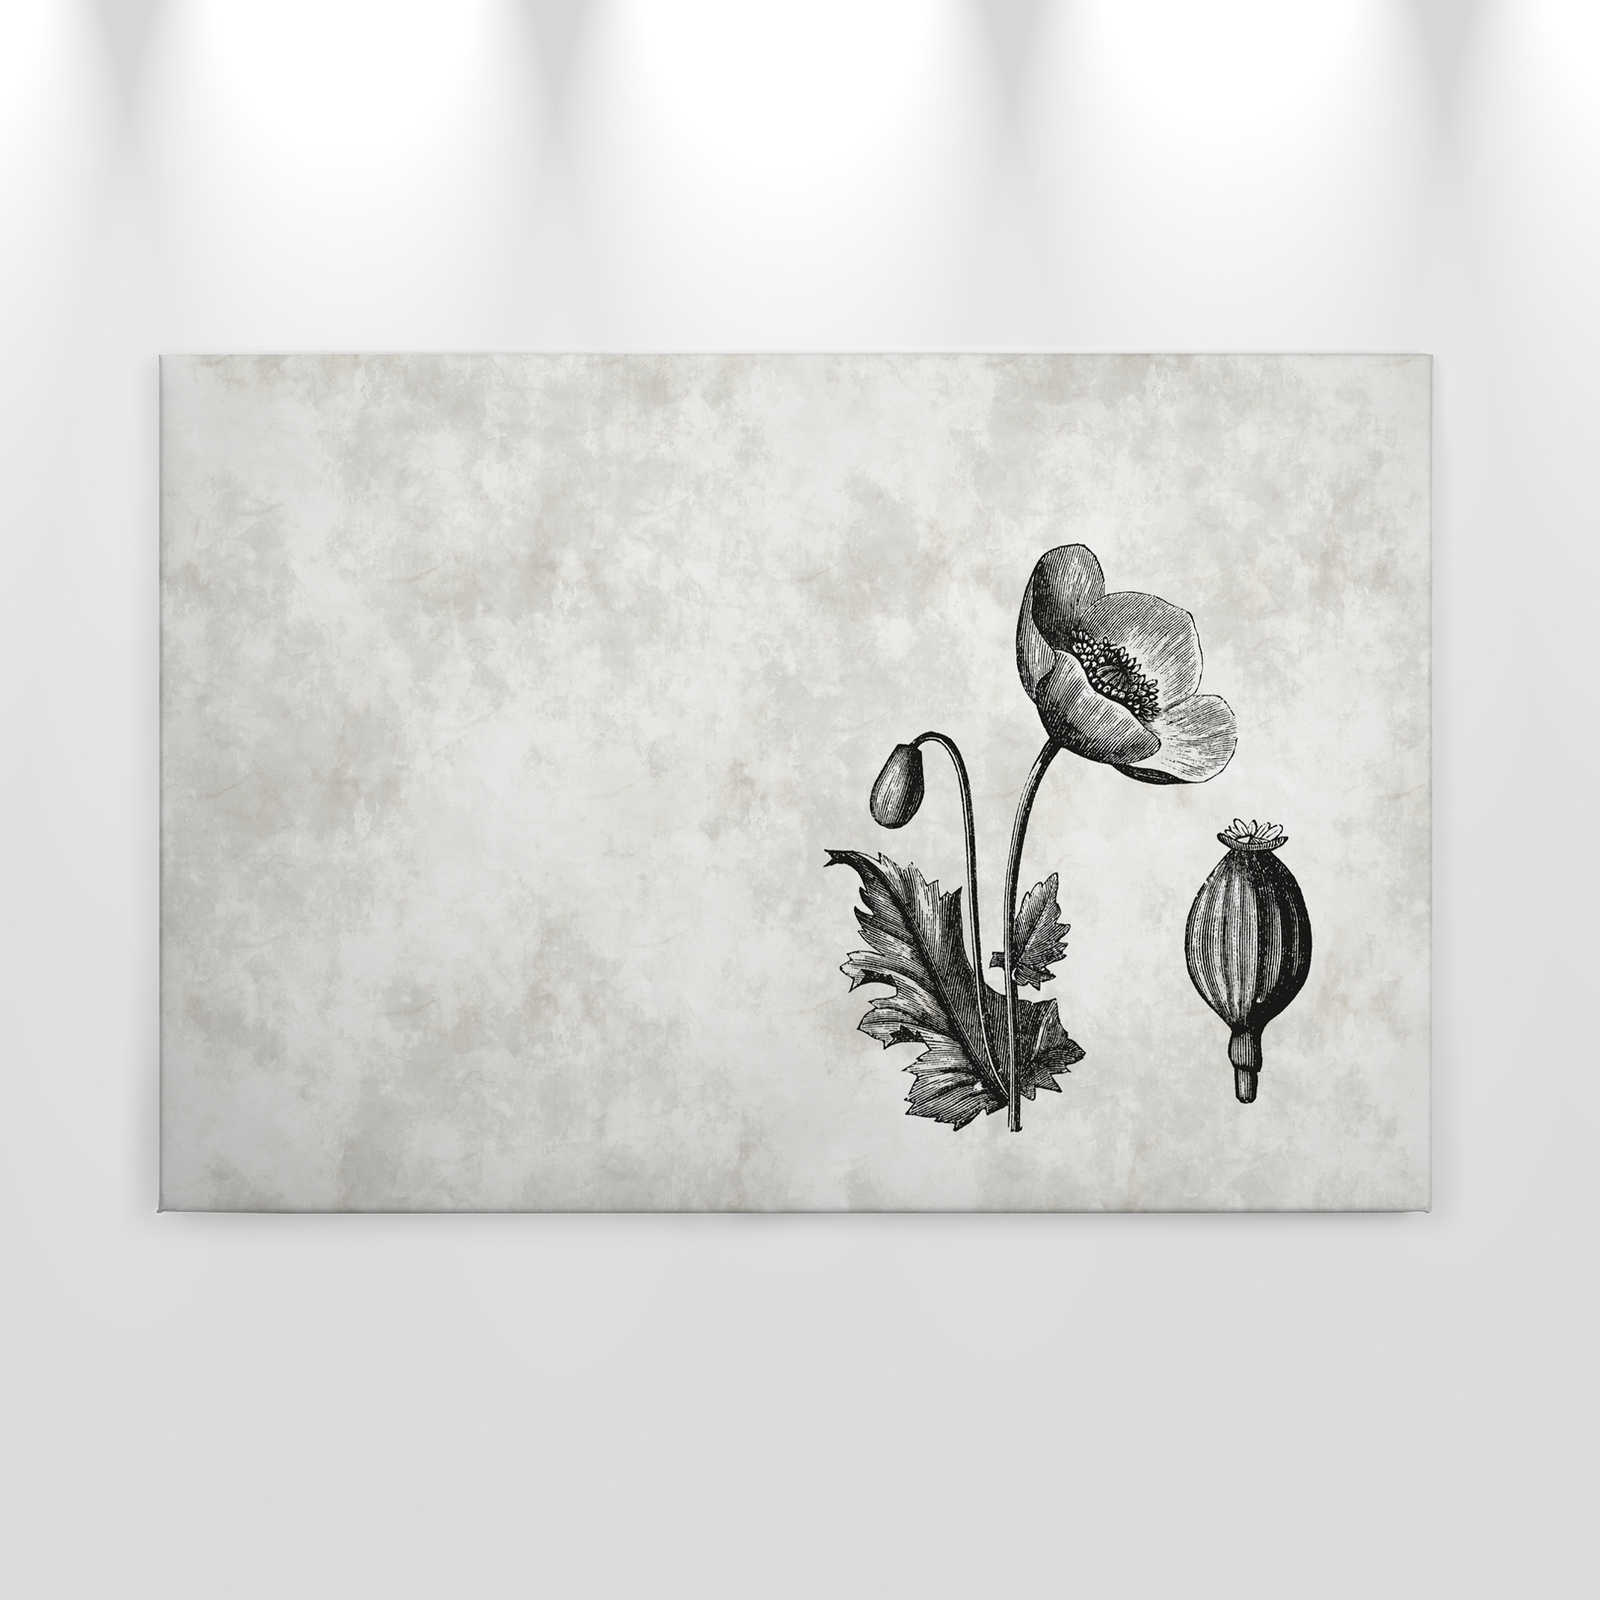             Zwart-wit Canvas Papaver Botanische Stijl - 0.90 m x 0.60 m
        